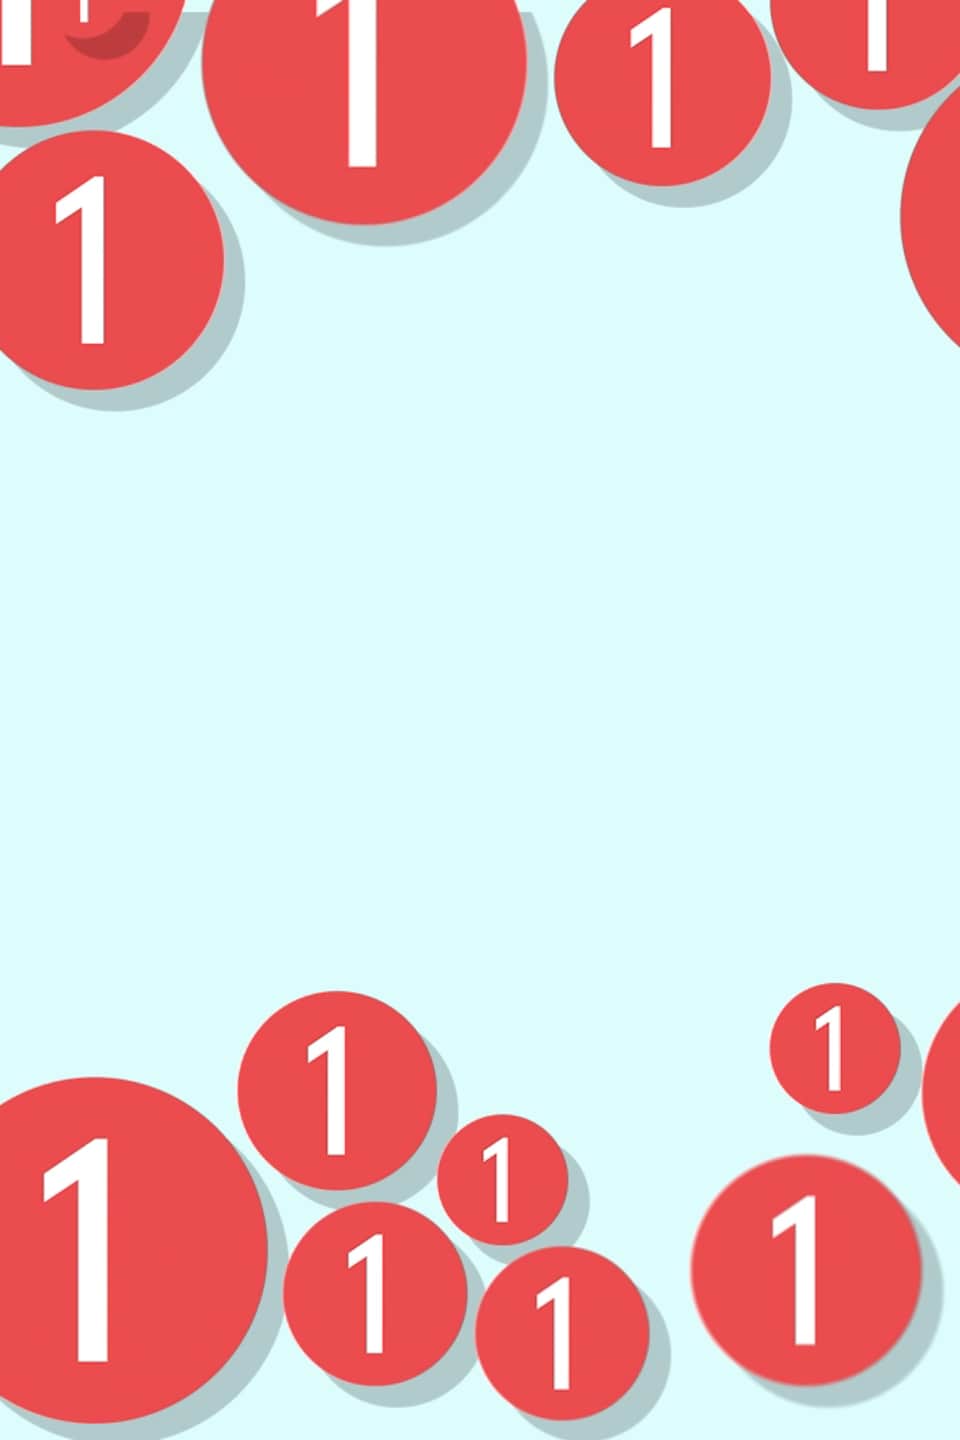 Illustration d'un téléphone cellulaire avec une pastille rouge de notification dans le coin supérieur droit. L'arrière plan de la photo est une série de pastilles de notifications avec un petit "1" à l'intérieur.